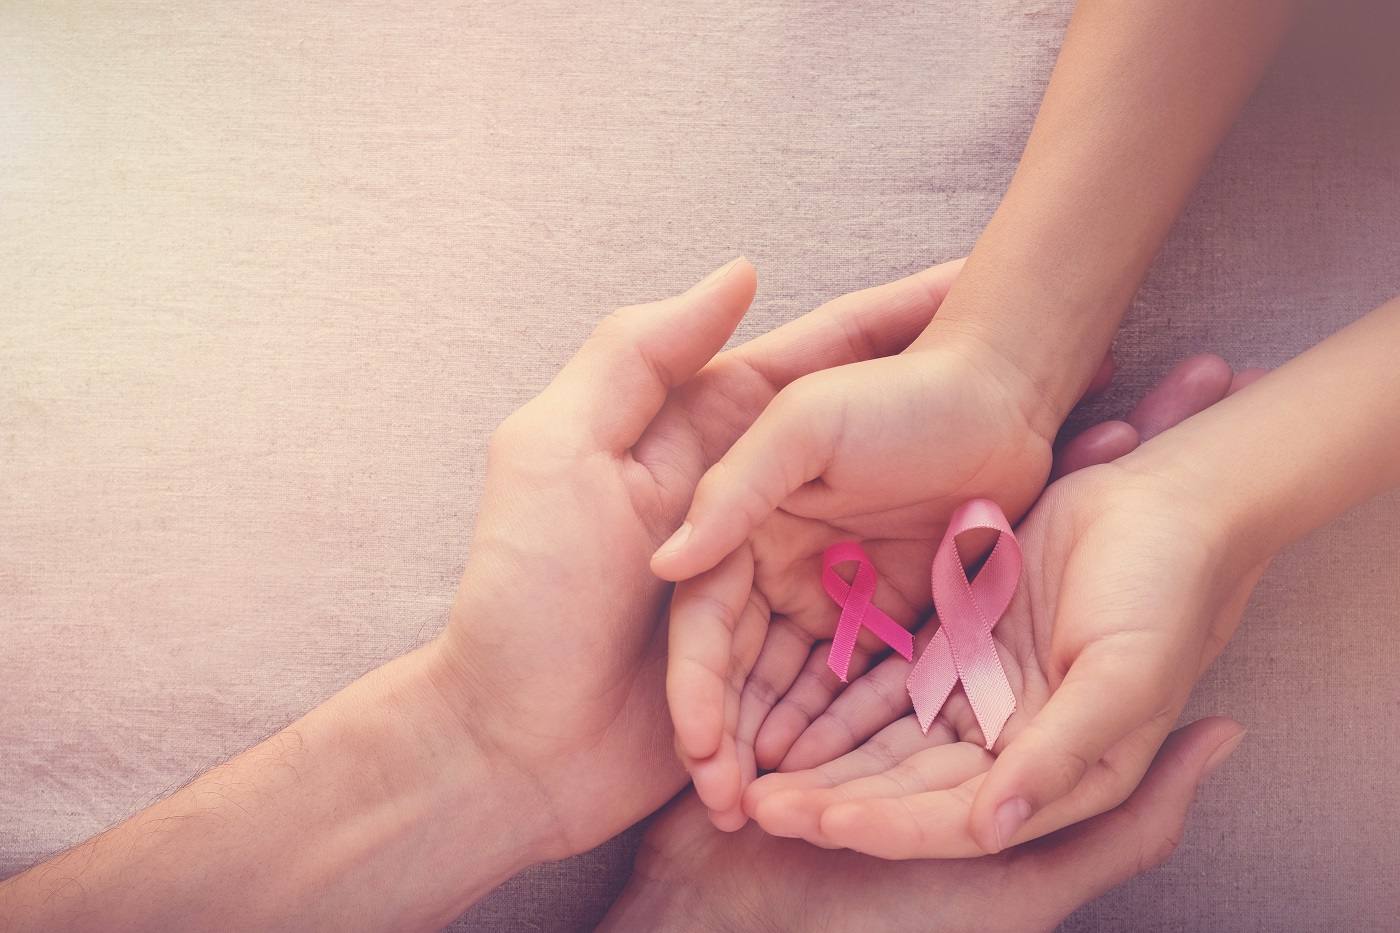 Chez IVI, 1 patiente sur 3 ayant eu un cancer du sein parvient à accéder à la maternité